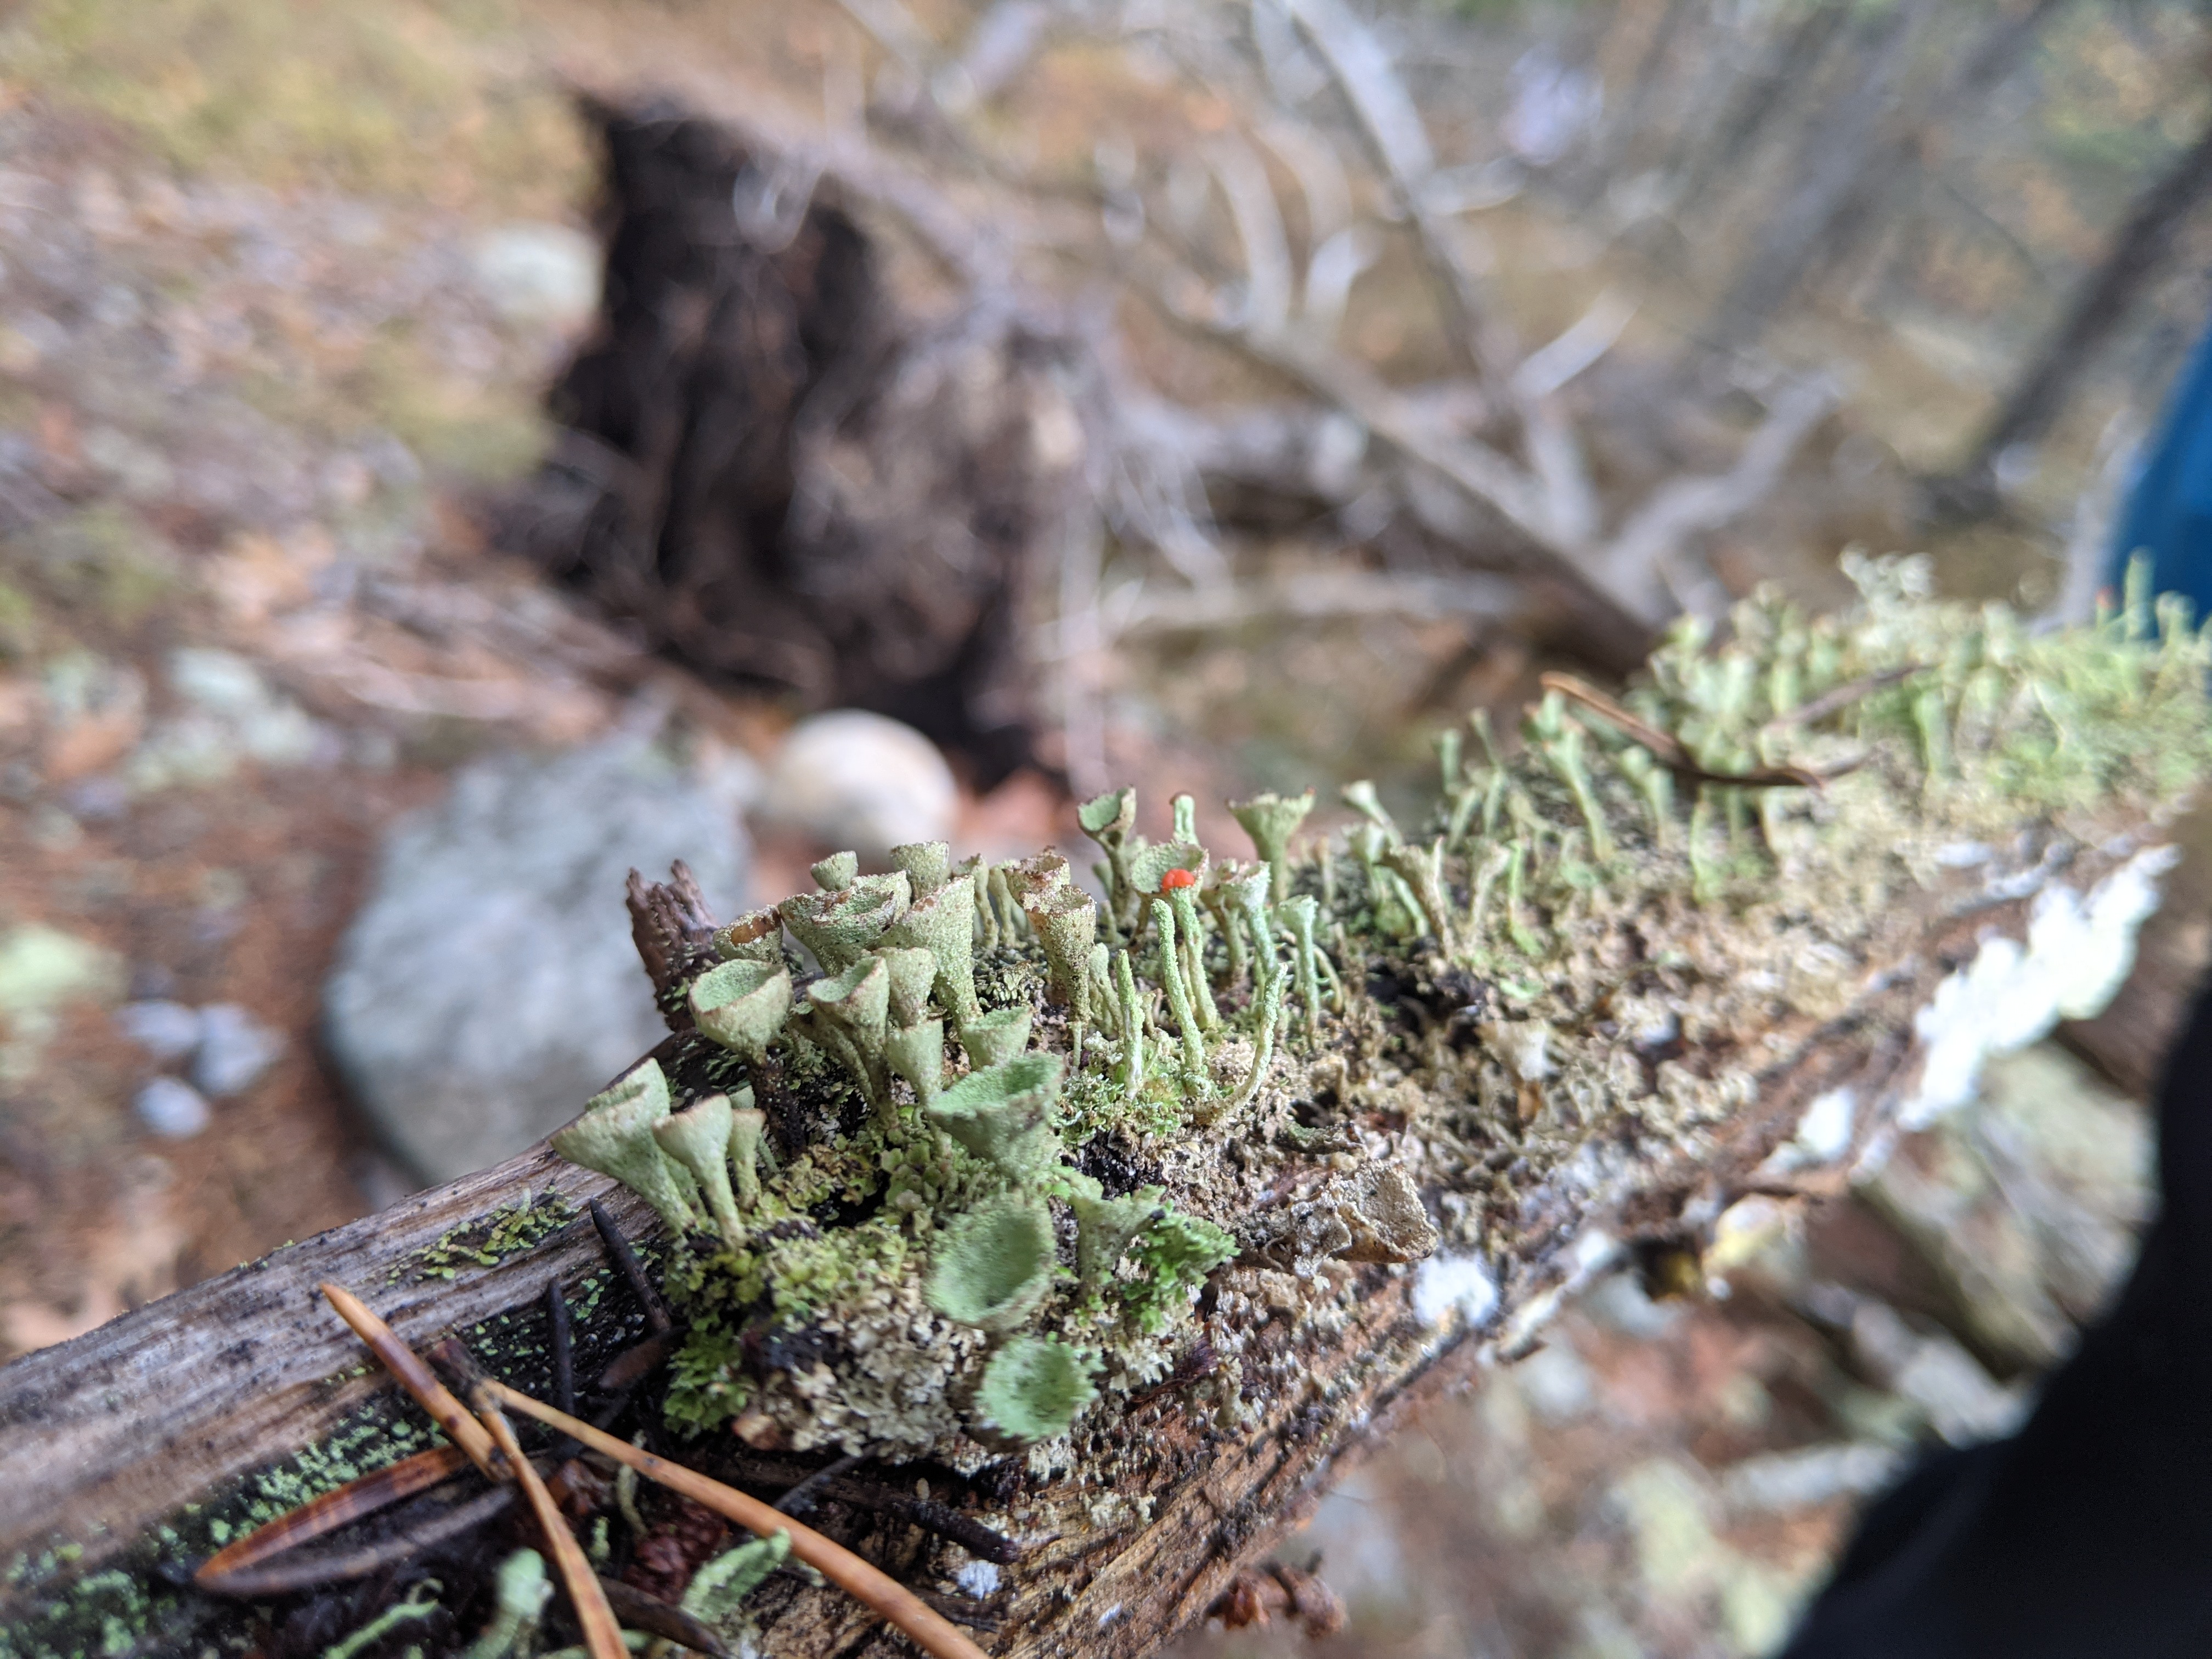 Some pixie cup lichen.